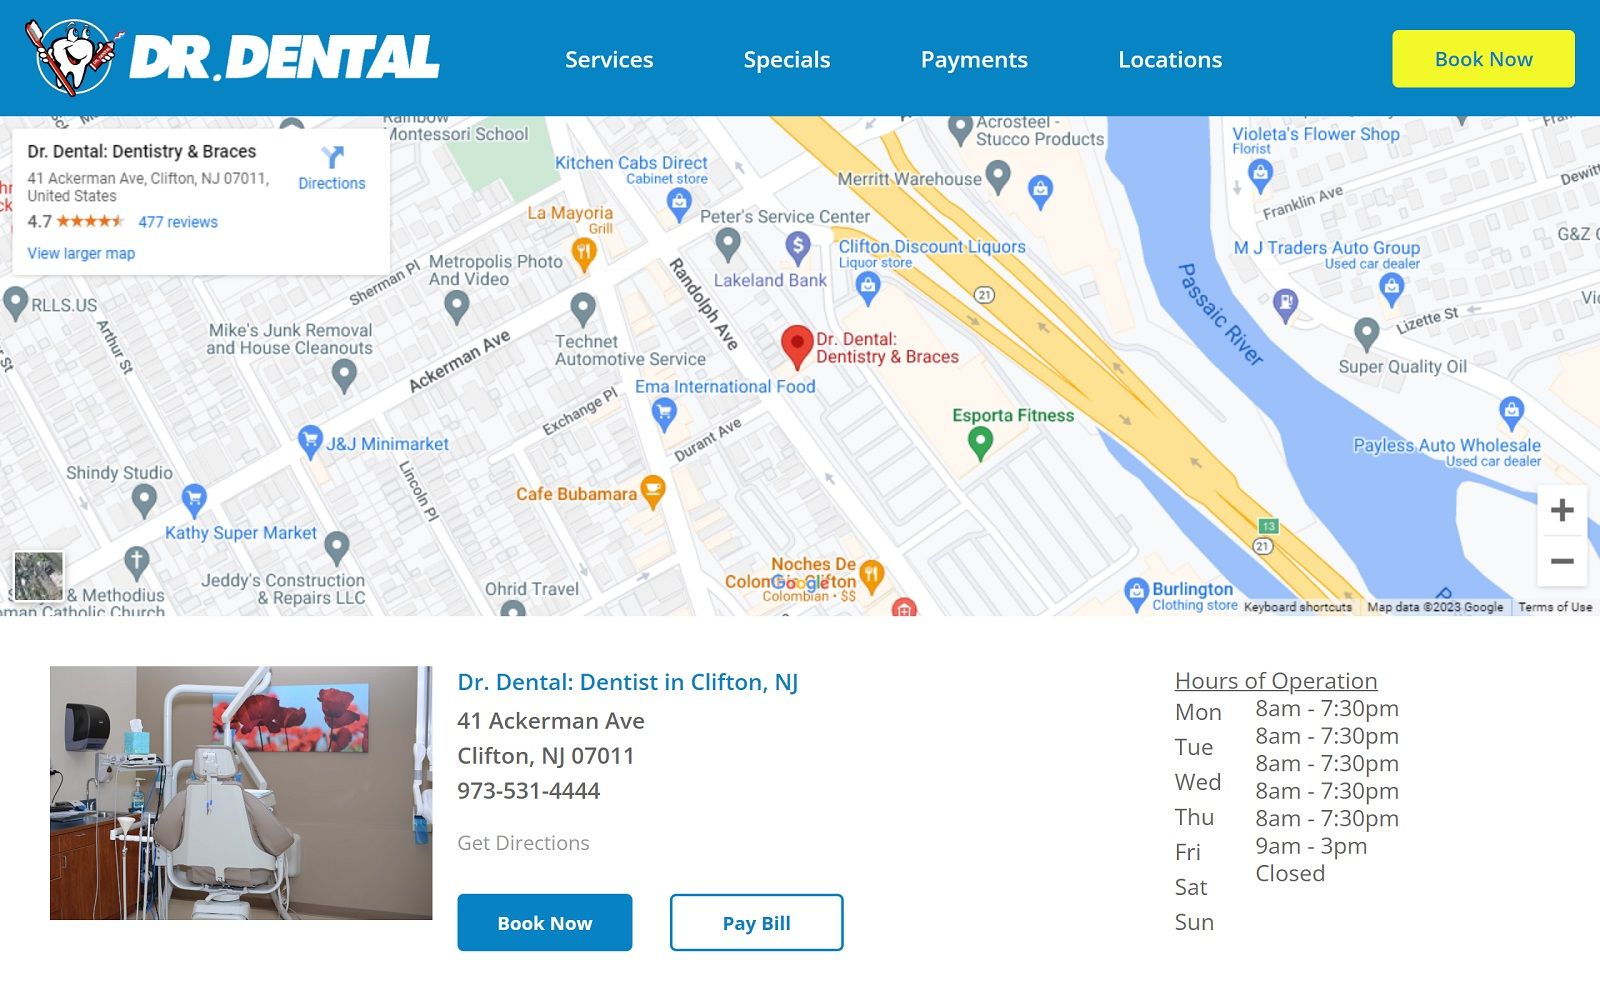 Mydrdental. Com_location_new-jersey_dr-dental-dentist-clifton-nj